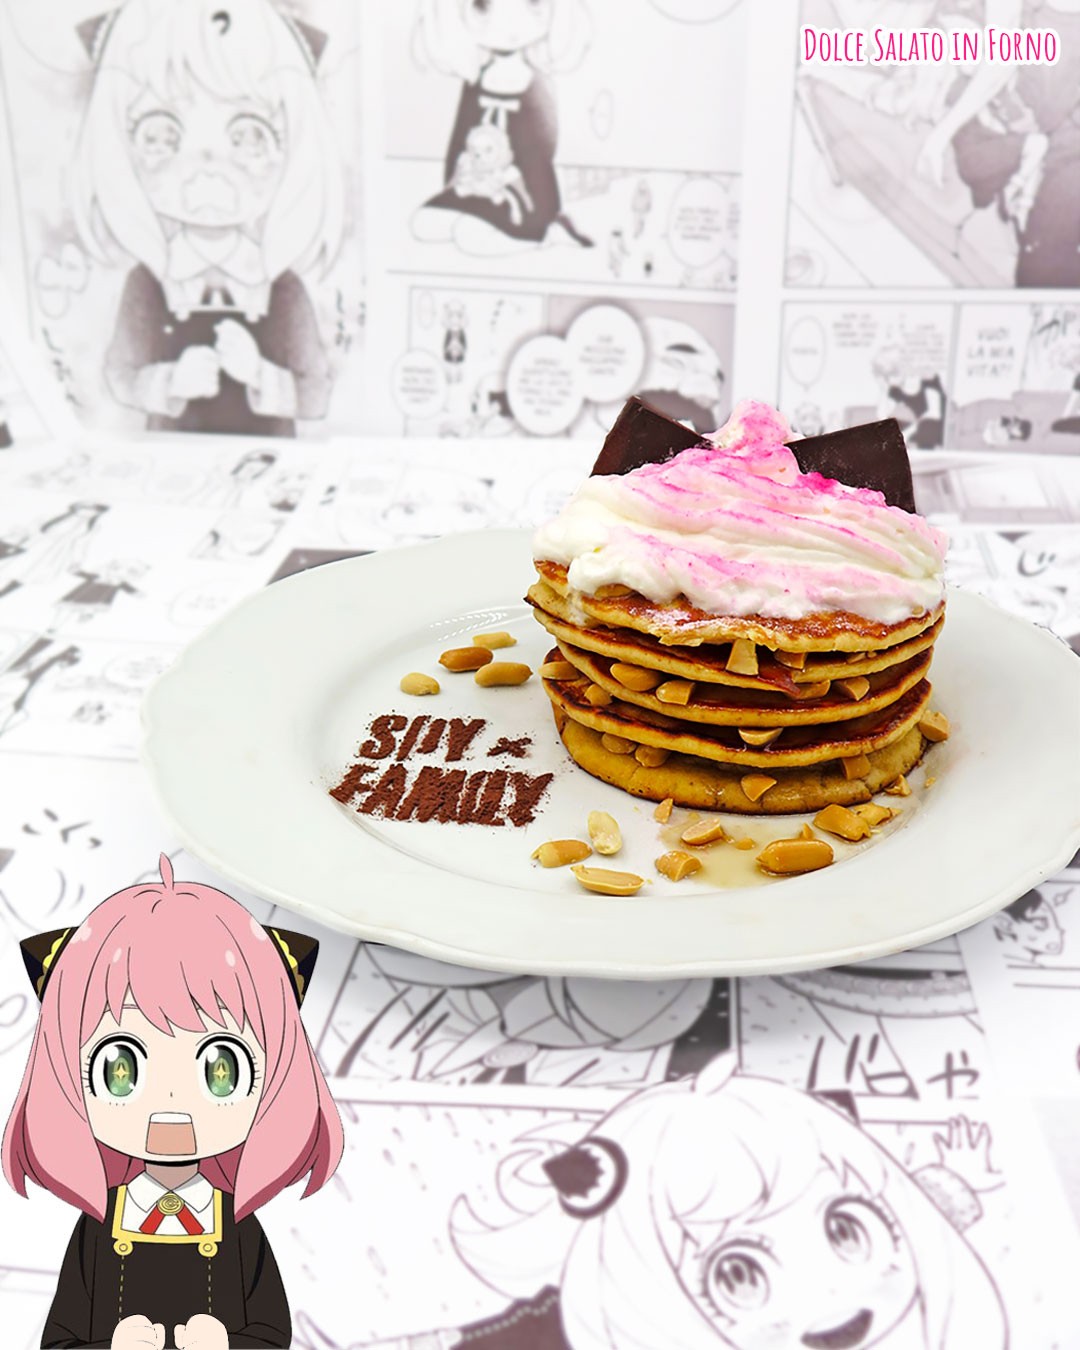 Trasformiamo #anyaforger , la piccola protagonista di #spyxfamily ,in una torre di #pancake 🥞 preparati con il suo cibo preferito: le 𝗮𝗿𝗮𝗰𝗵𝗶𝗱𝗶! 🥜

Non è adorabile?! 🥰

👉Trovi la ricetta passo passo dei #pancakes al burro di arachidi di #anya cliccando sul link nella mia bio! 😉
.
.
.
#dolcesalatoinforno #ricettemanga #spyfamily #spyxfamilyanya #anyaspyxfamily #animefood #characterfood #manga #torredipancakes #pancakes🥞